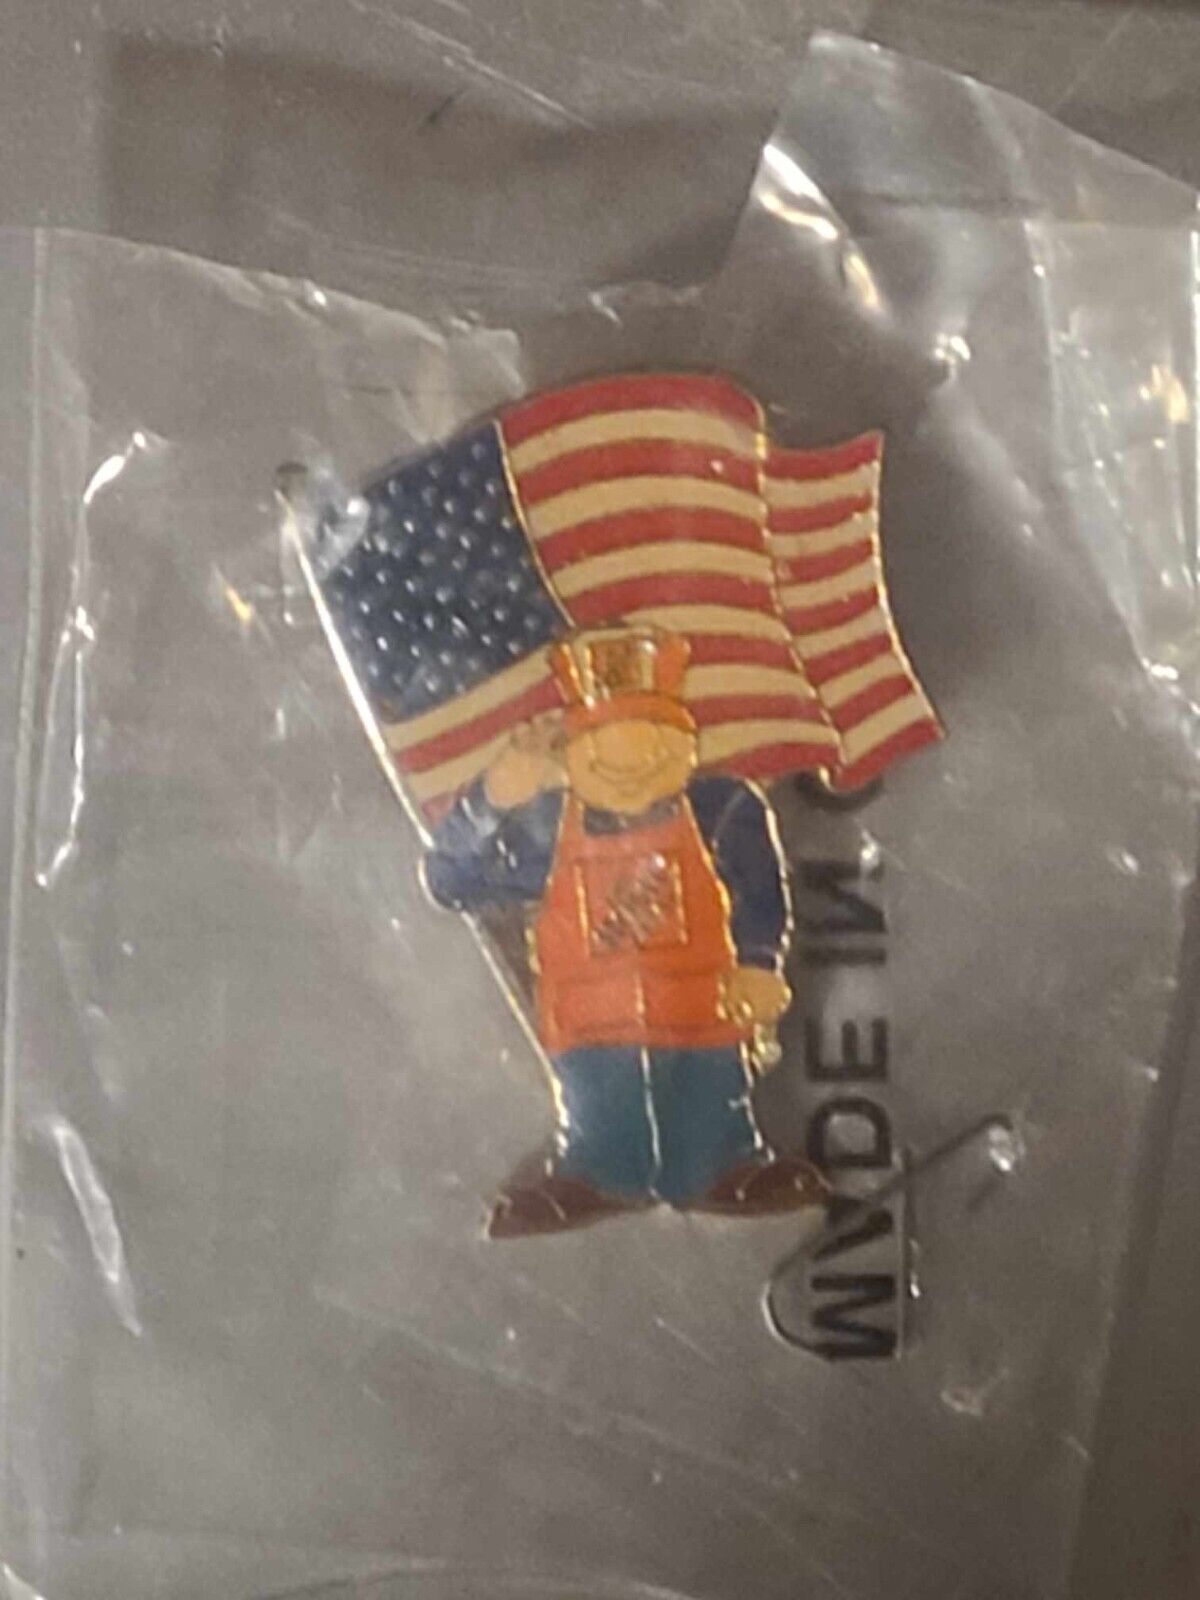 New Home Depot Saluting Associate Worker American Flag Homer D Poe Lapel Pin